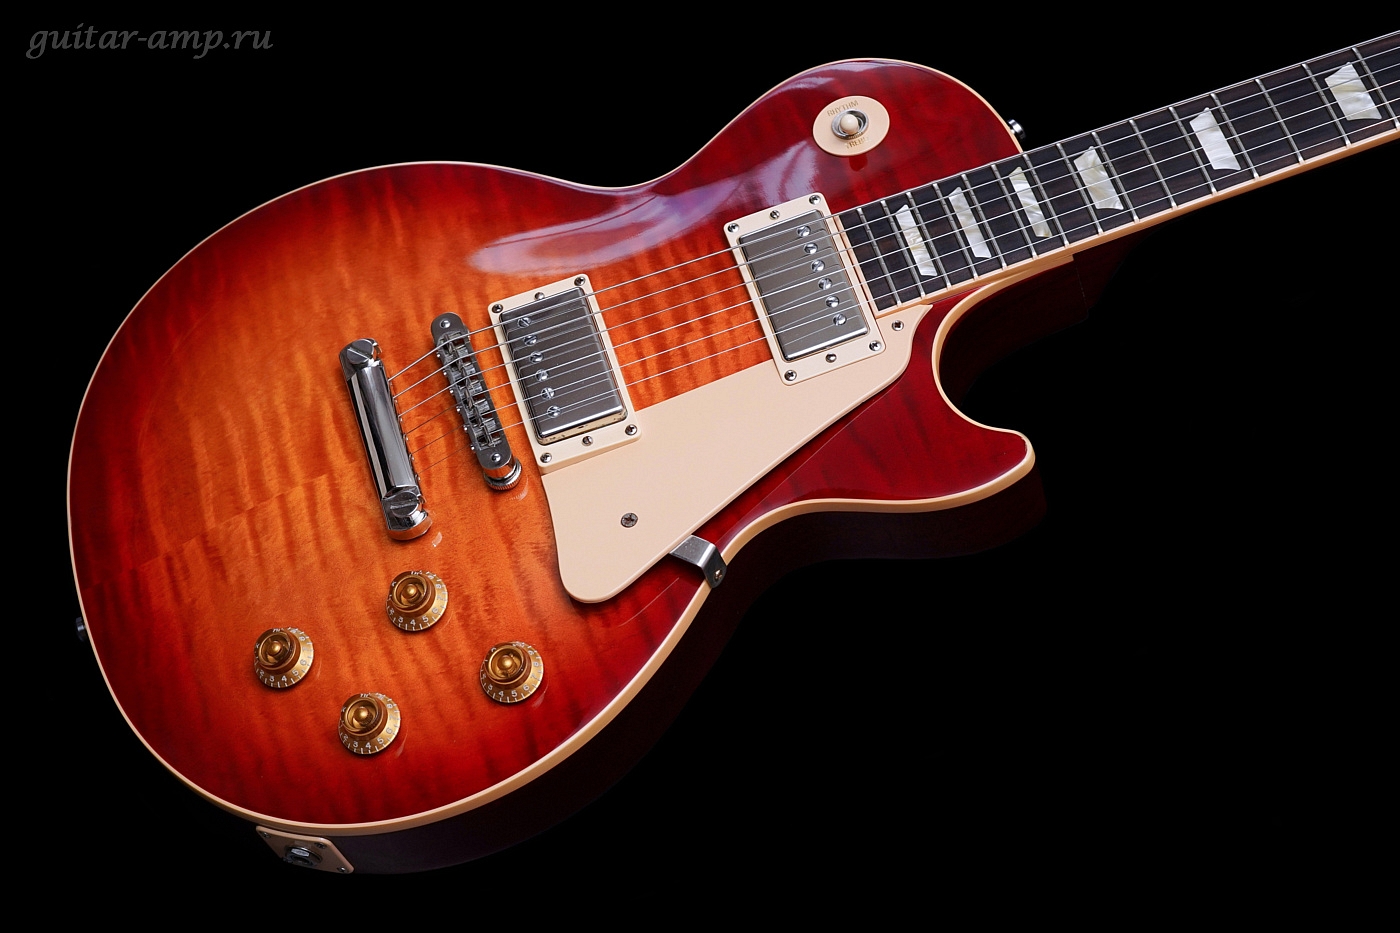 Gibson Les Paul Standard Premium Plus Heritage Cherry Sunburst All Original 2005